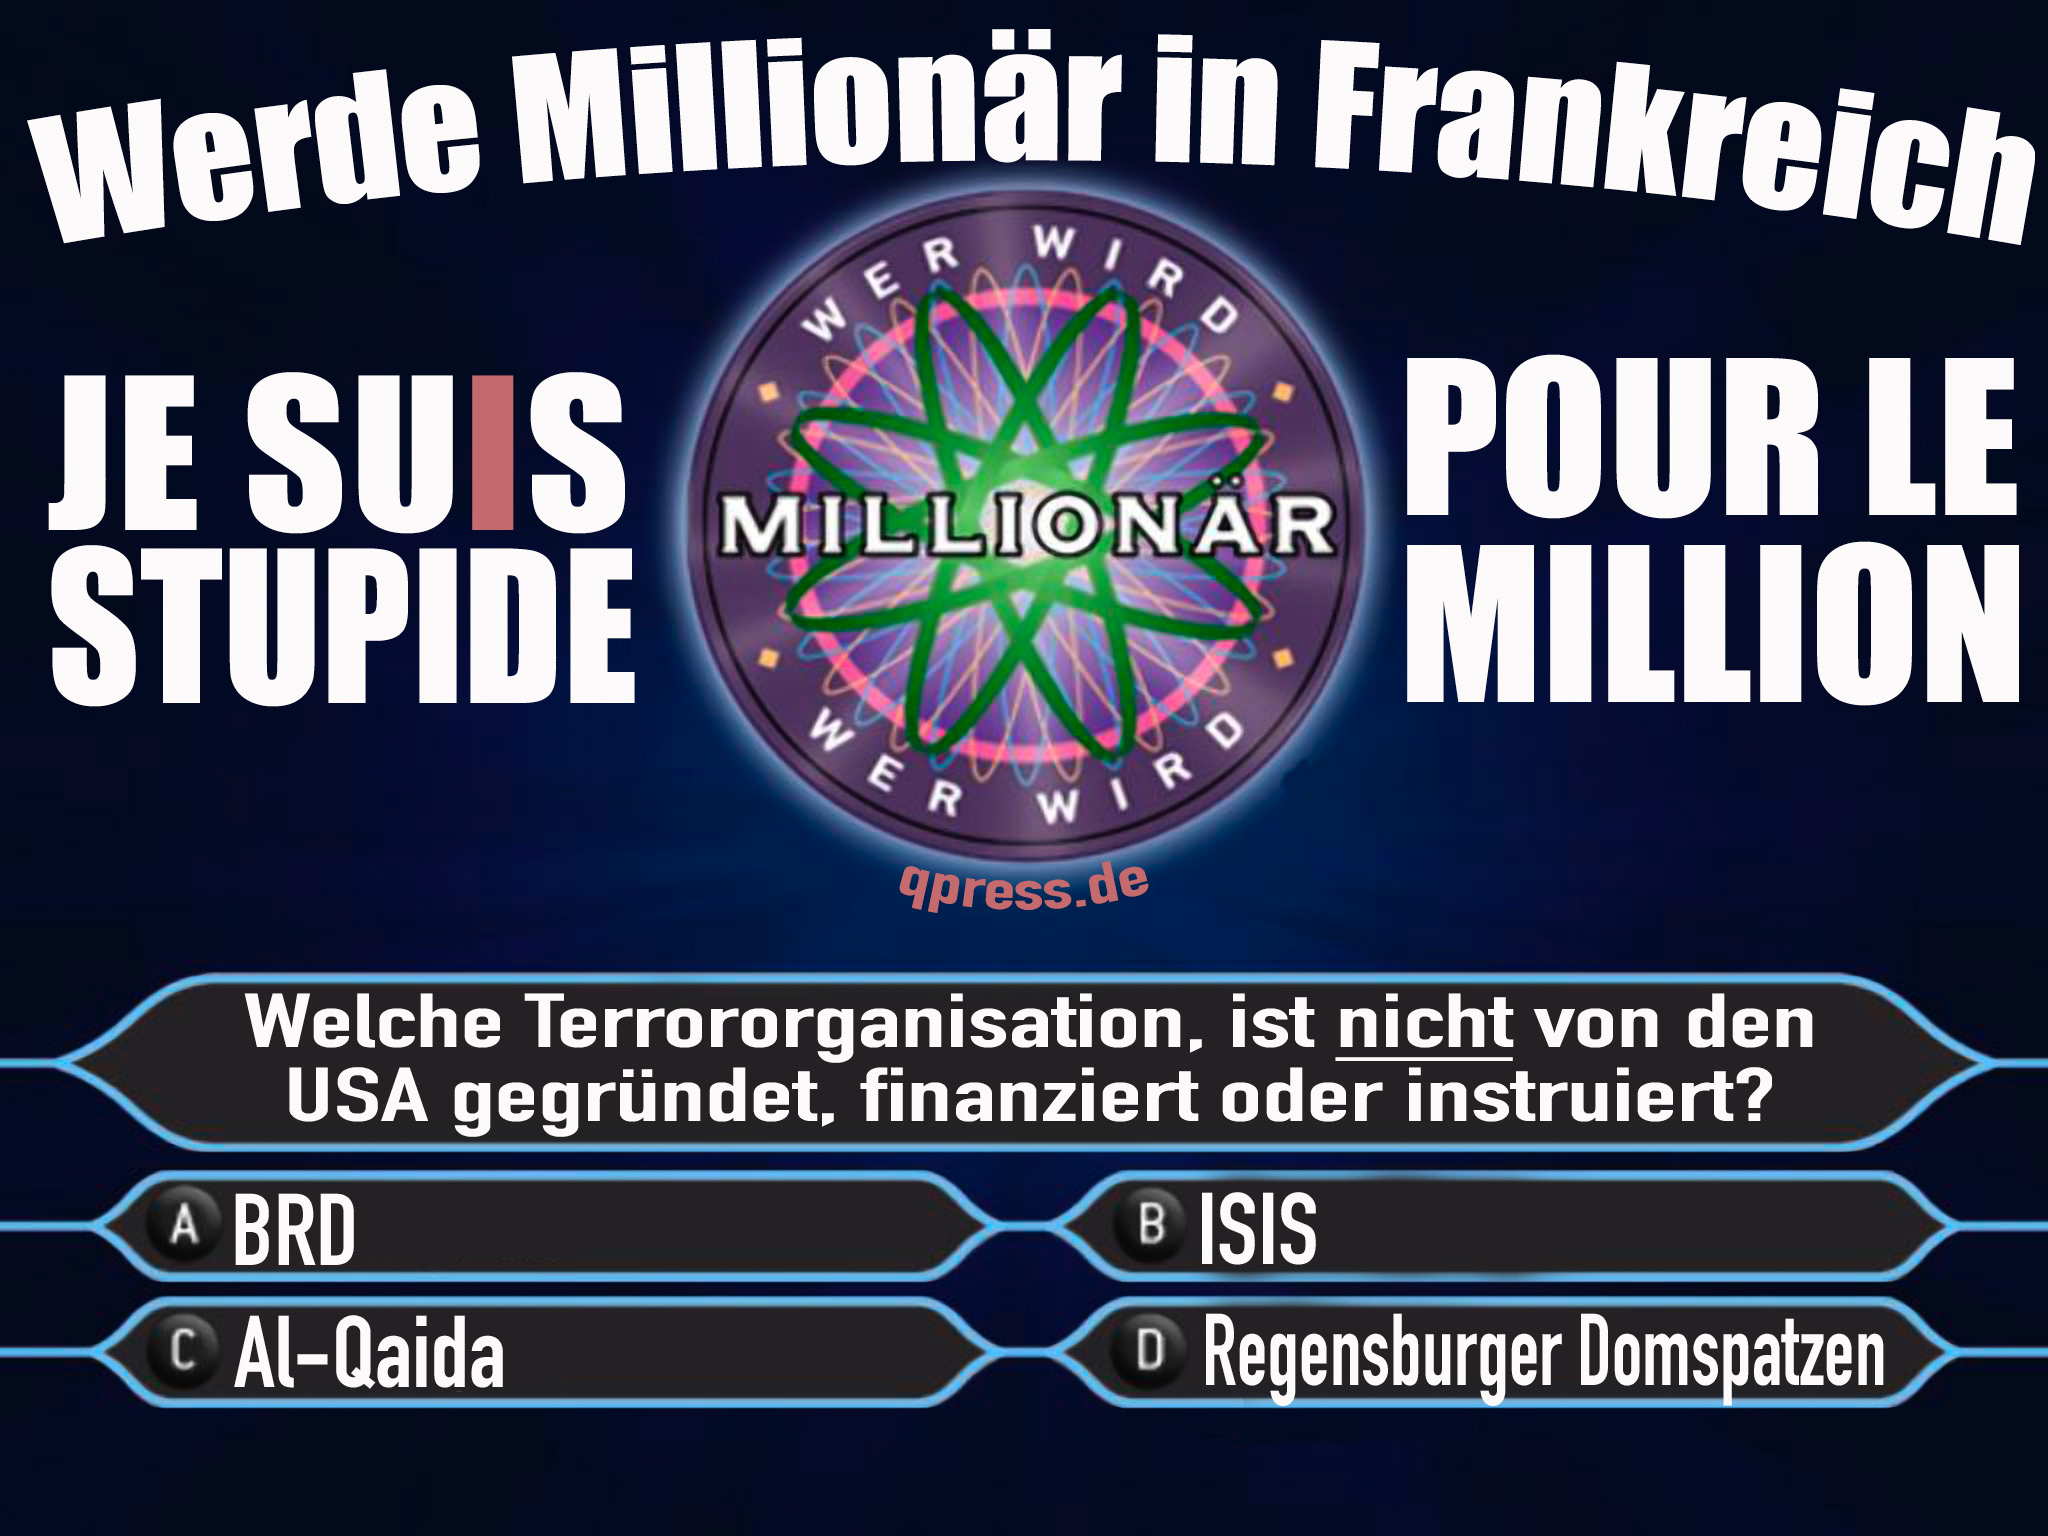 Millionenfrage paris november 2015 werde millionaer in frankreich je suis stupit pur le million terror 1113 geheimdienste verdummungqpress